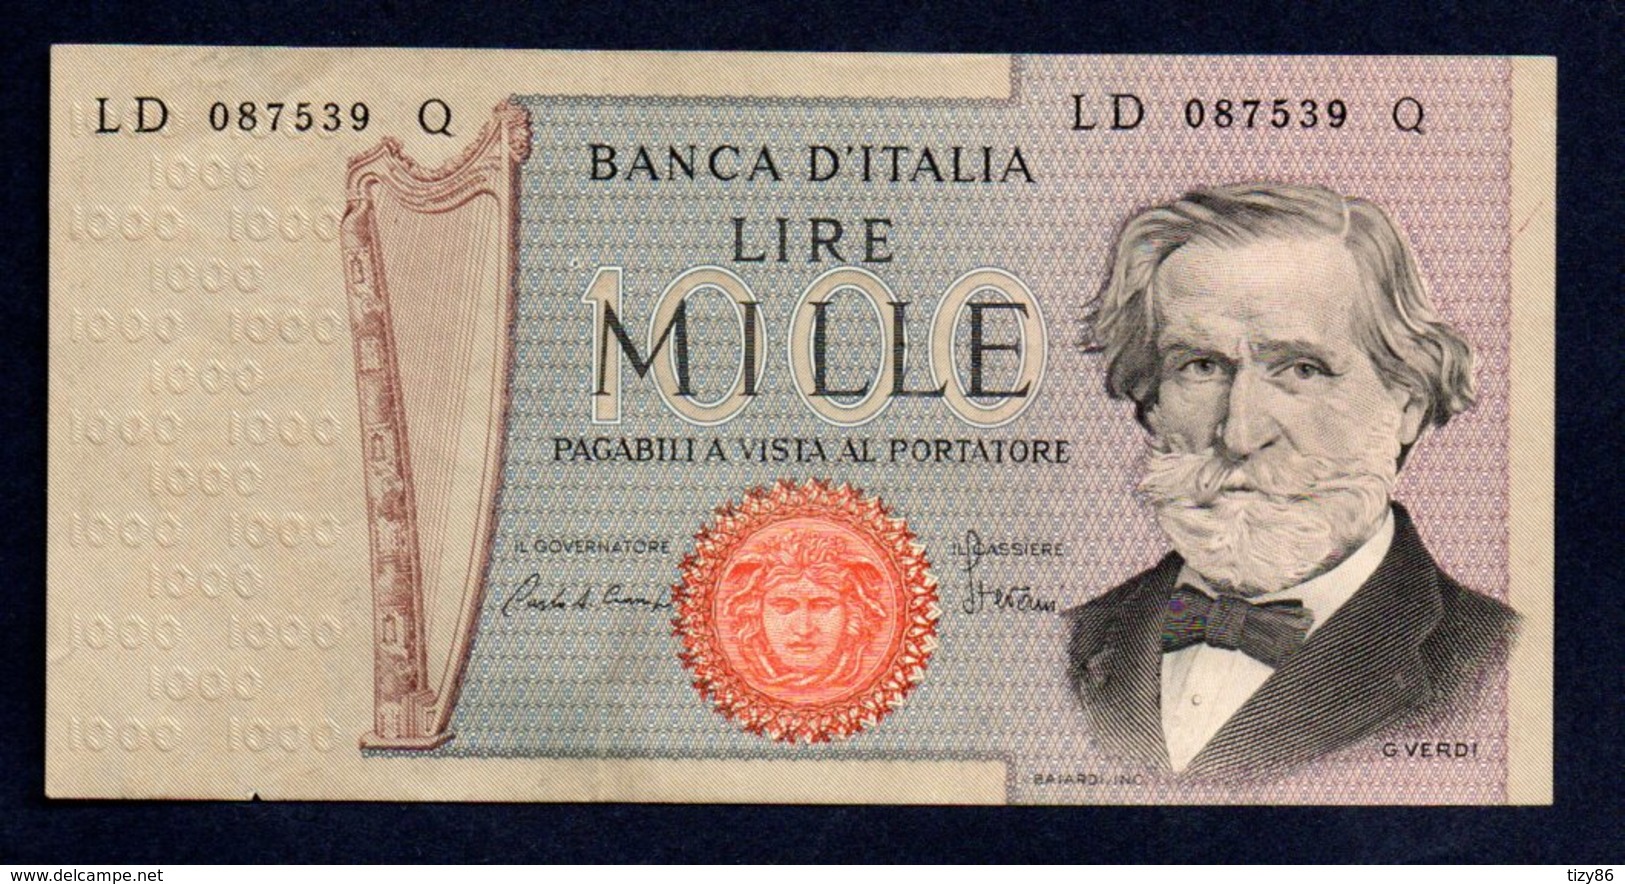 Banconota Italia - Lire 1000 G. Verdi 1981 - 1000 Lire